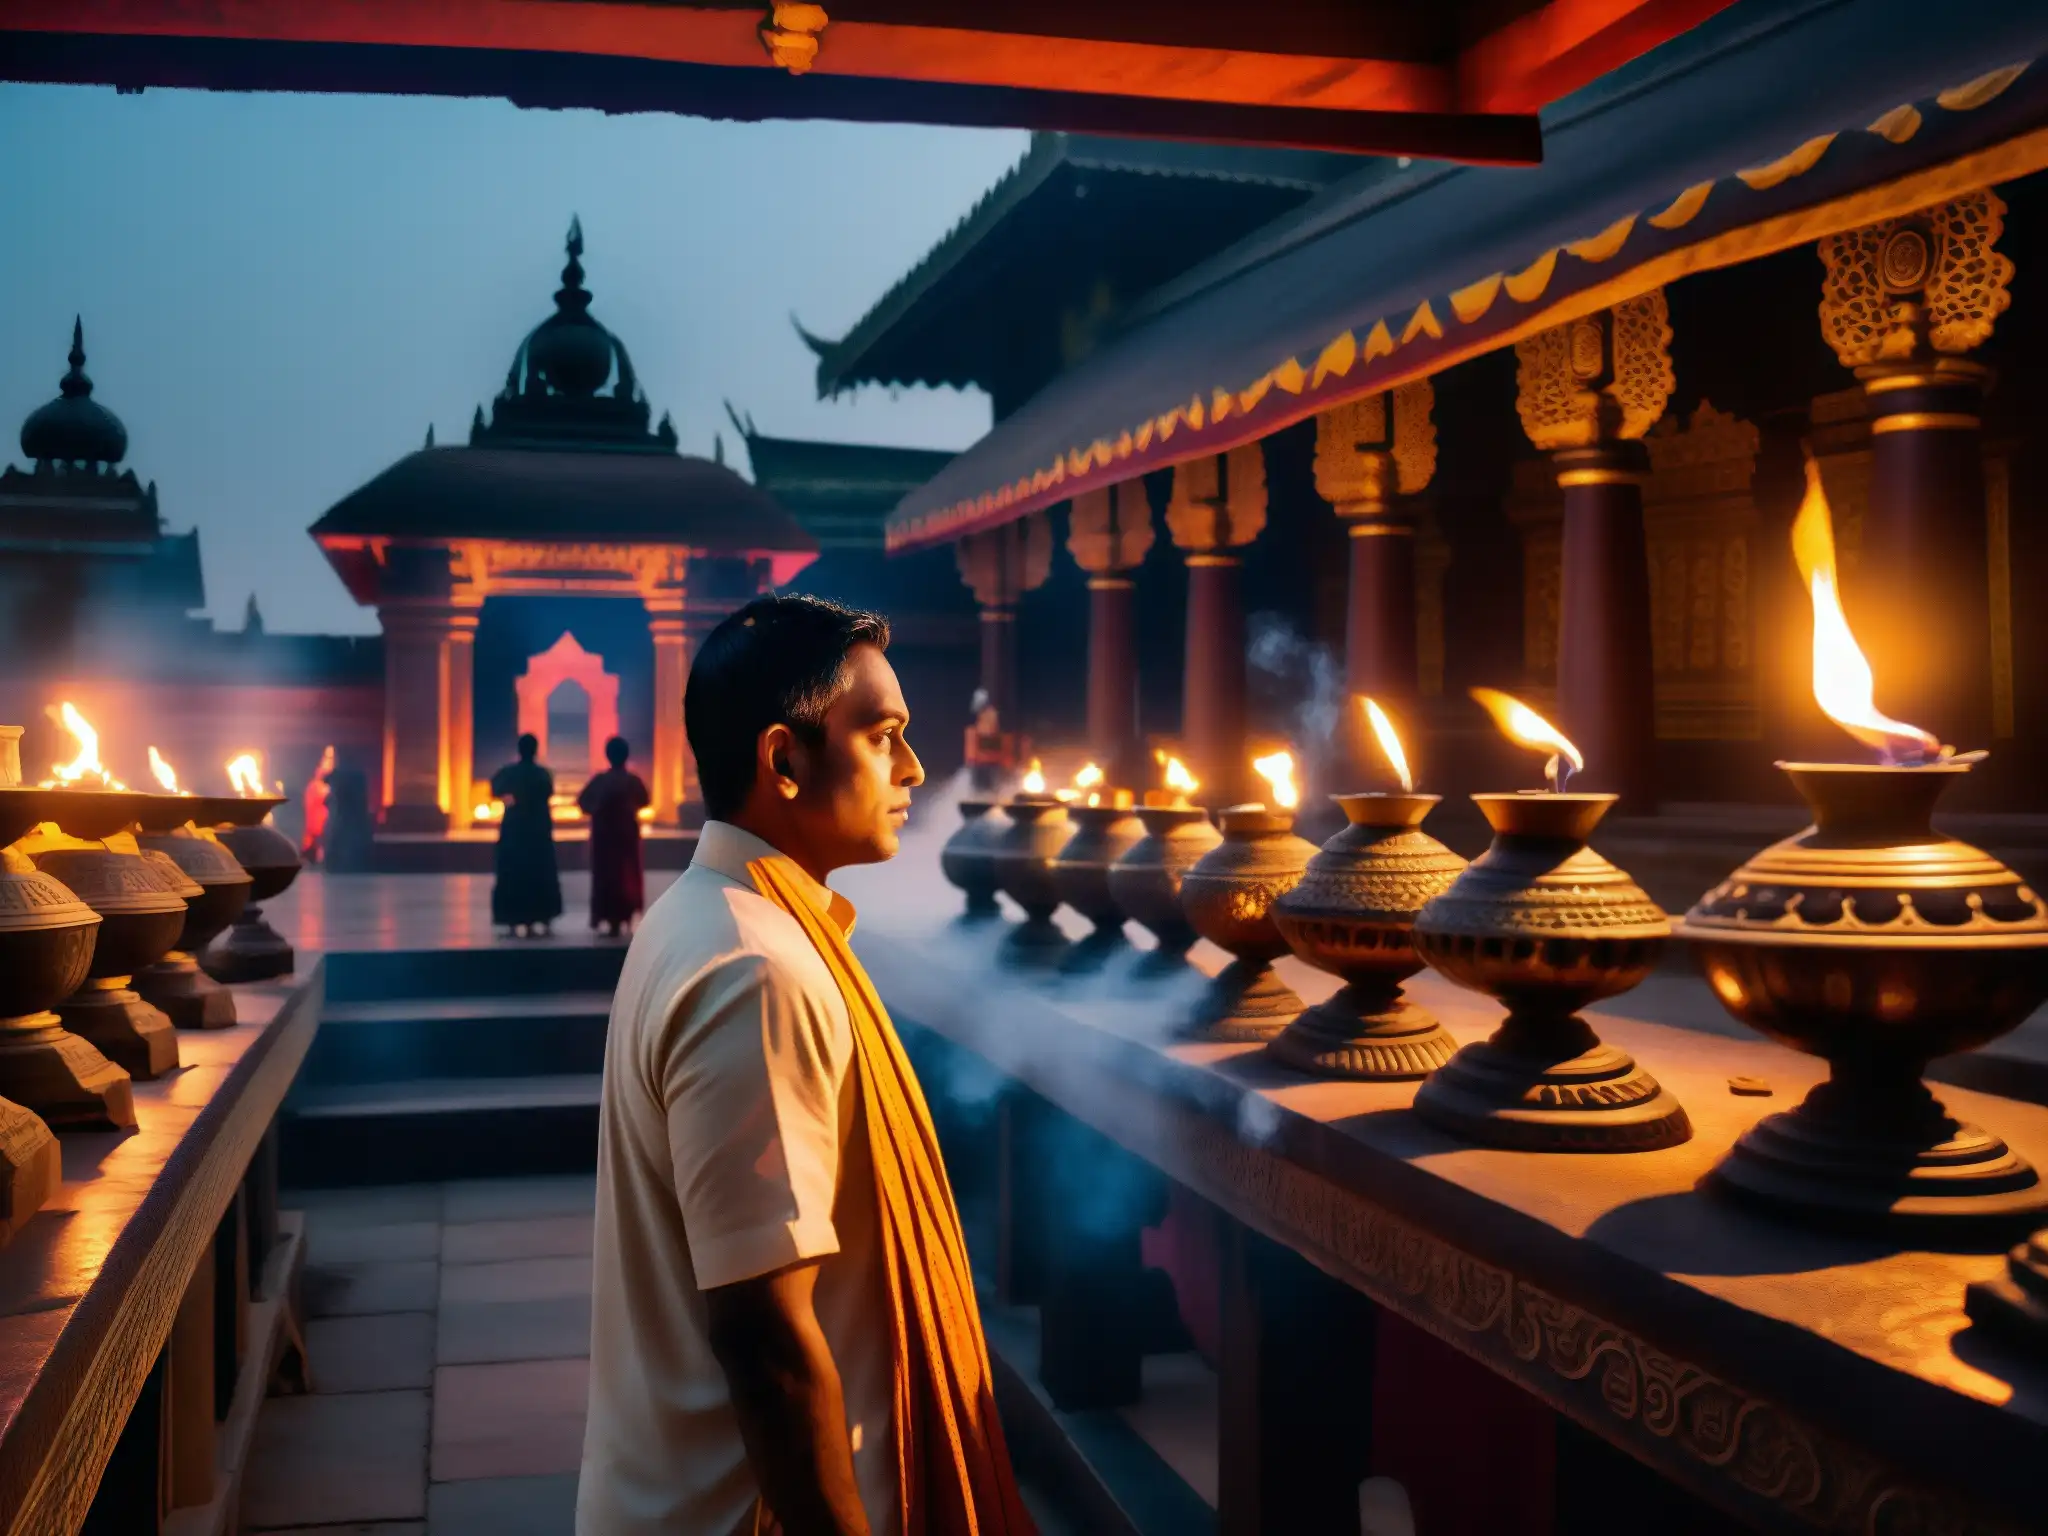 Una imagen nocturna de un templo hindú, con posesiones demoníacas tradiciones hindúes, sombras misteriosas y una atmósfera espiritual ancestral